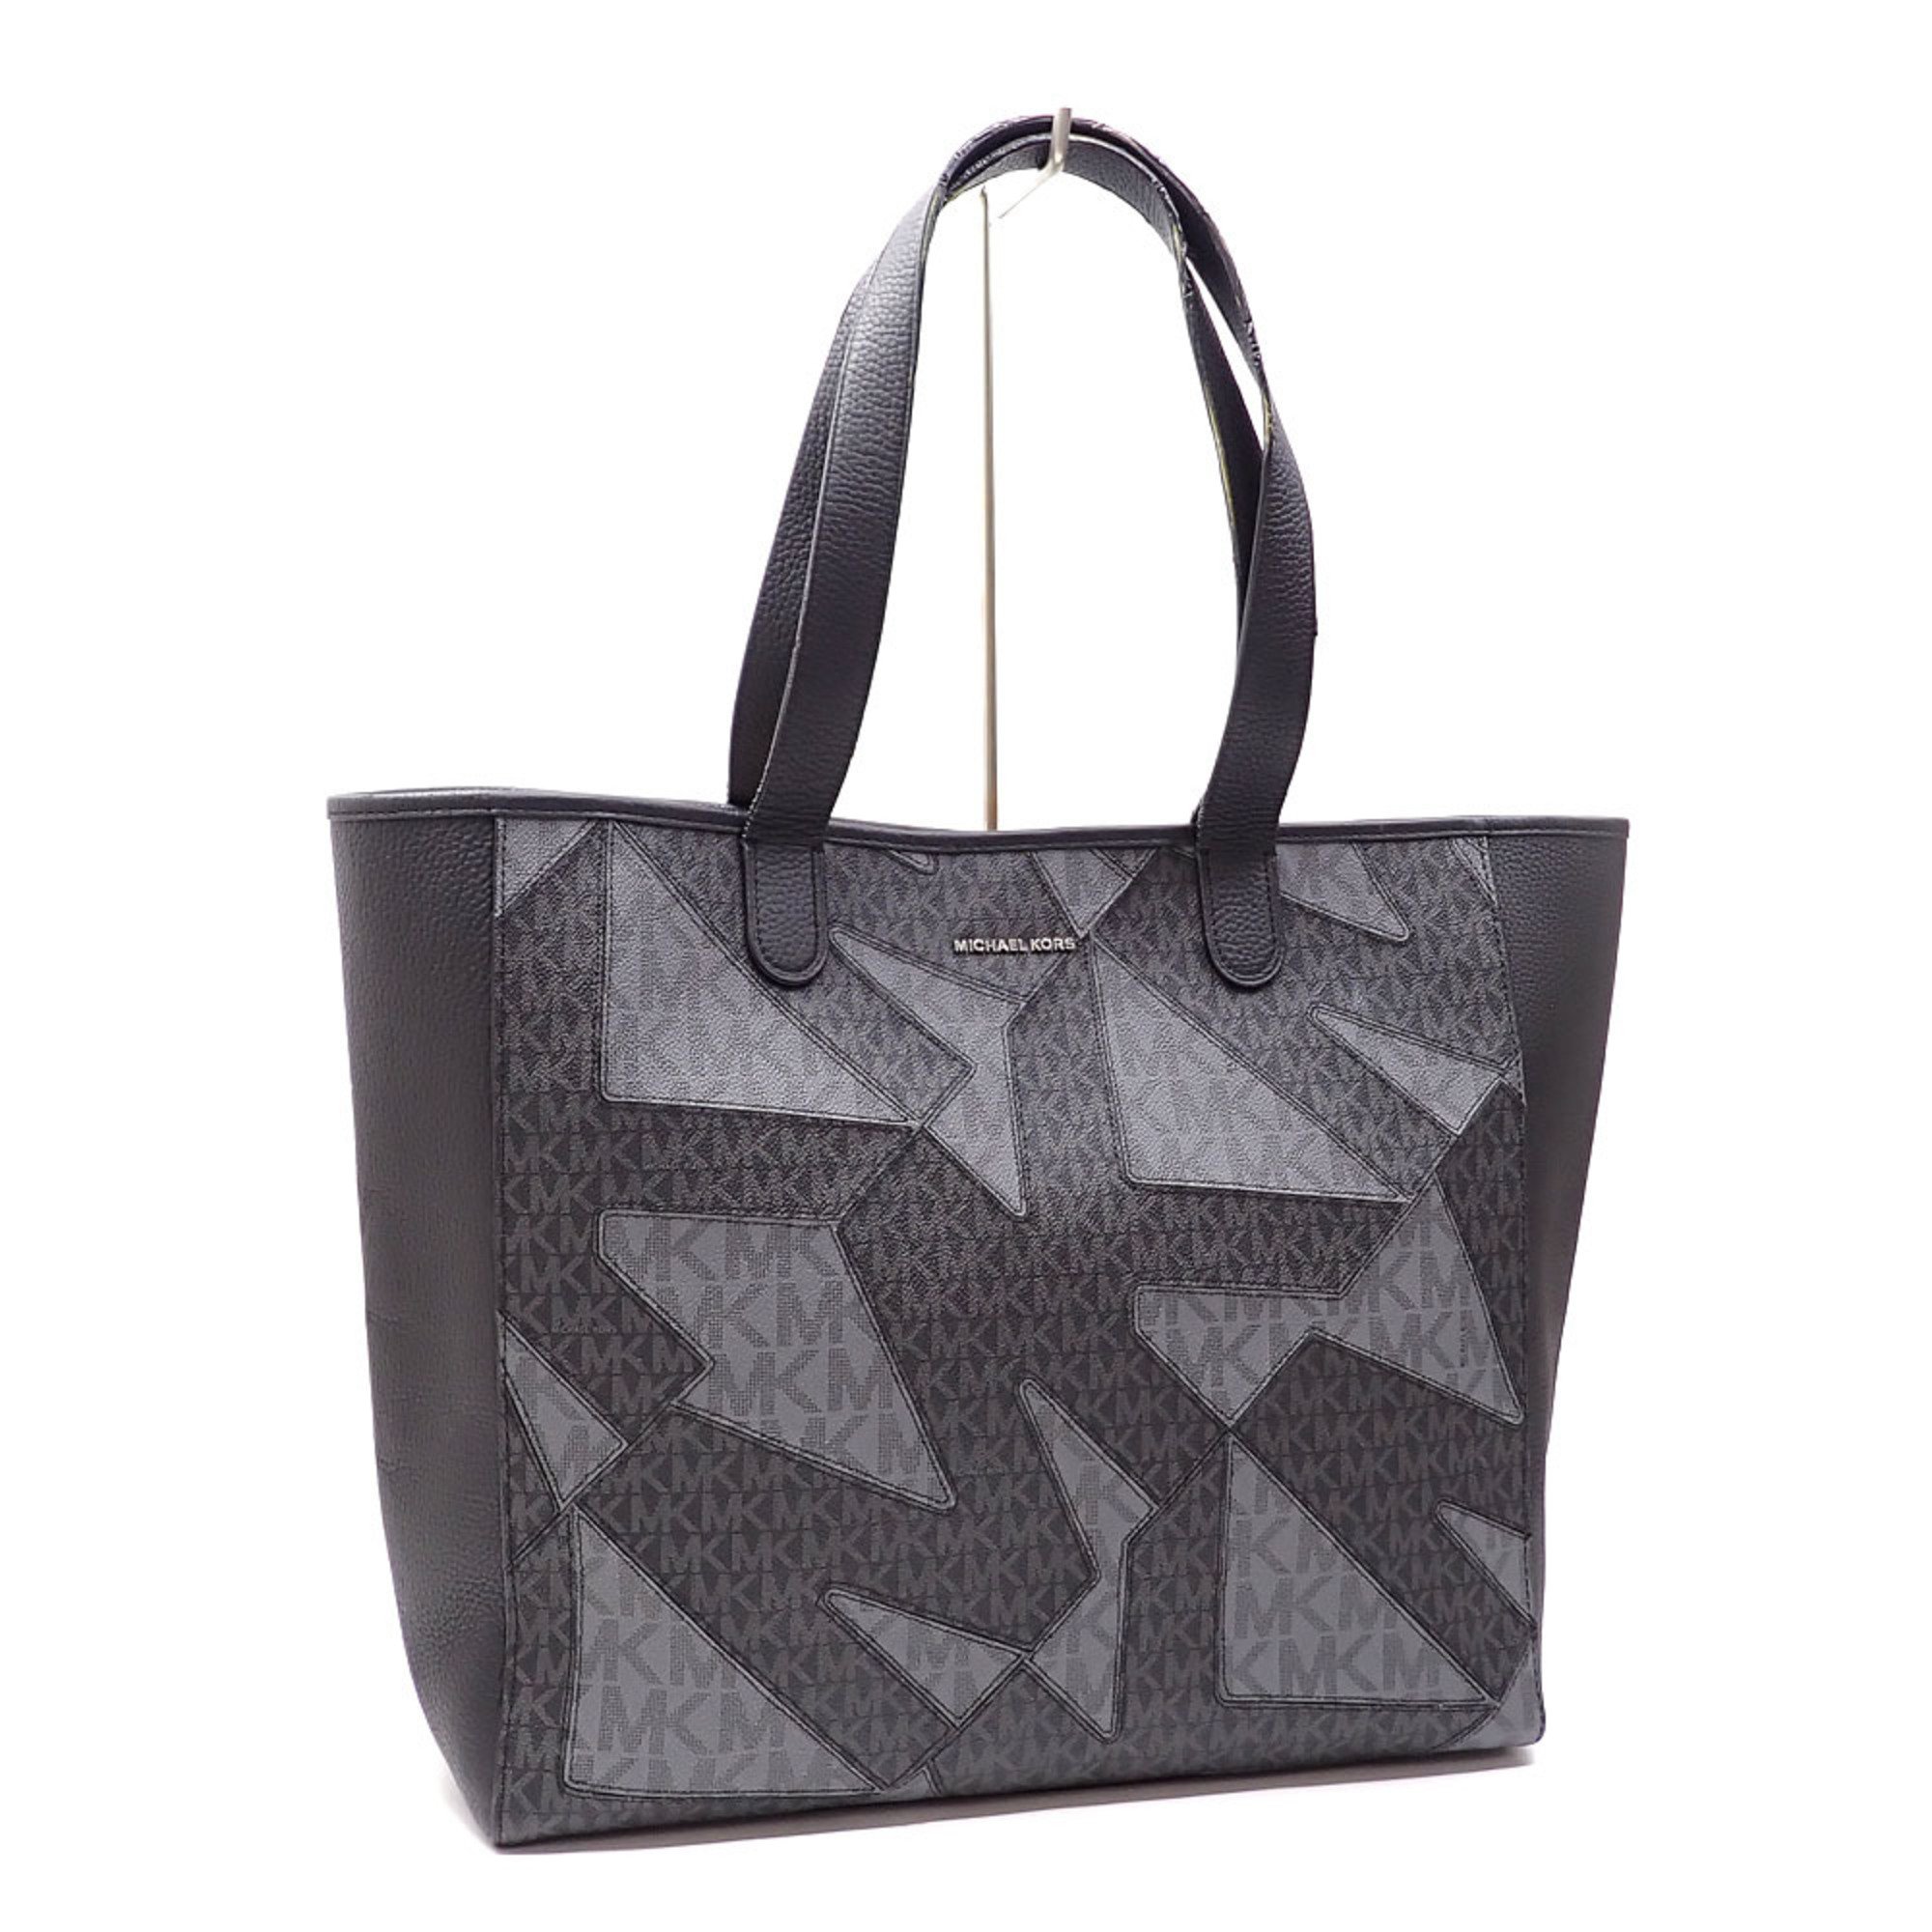 Michael Kors Tote Bag Hudson Shopper Men's Black PVC Leather 33F1LHDT3O1 MK Signature Handbag